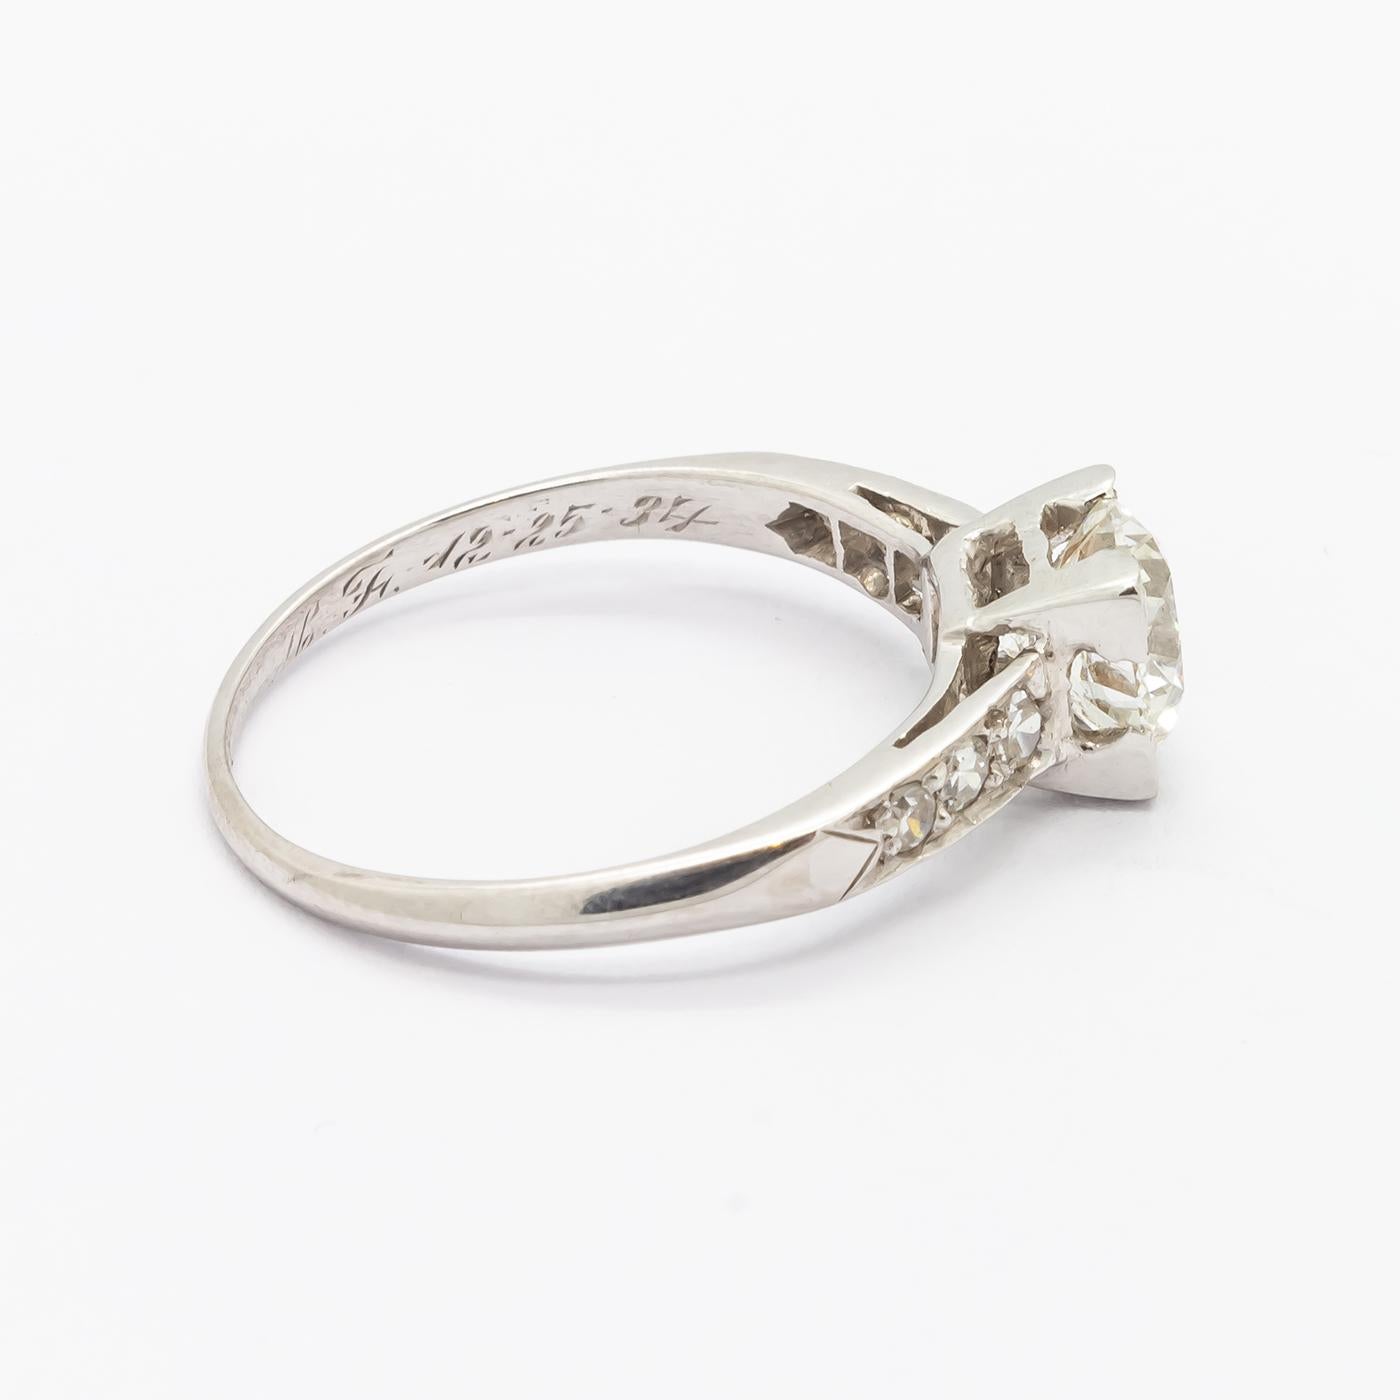 Women's 1.01 Carat Brilliant Cut Diamond Platinum Ring For Sale